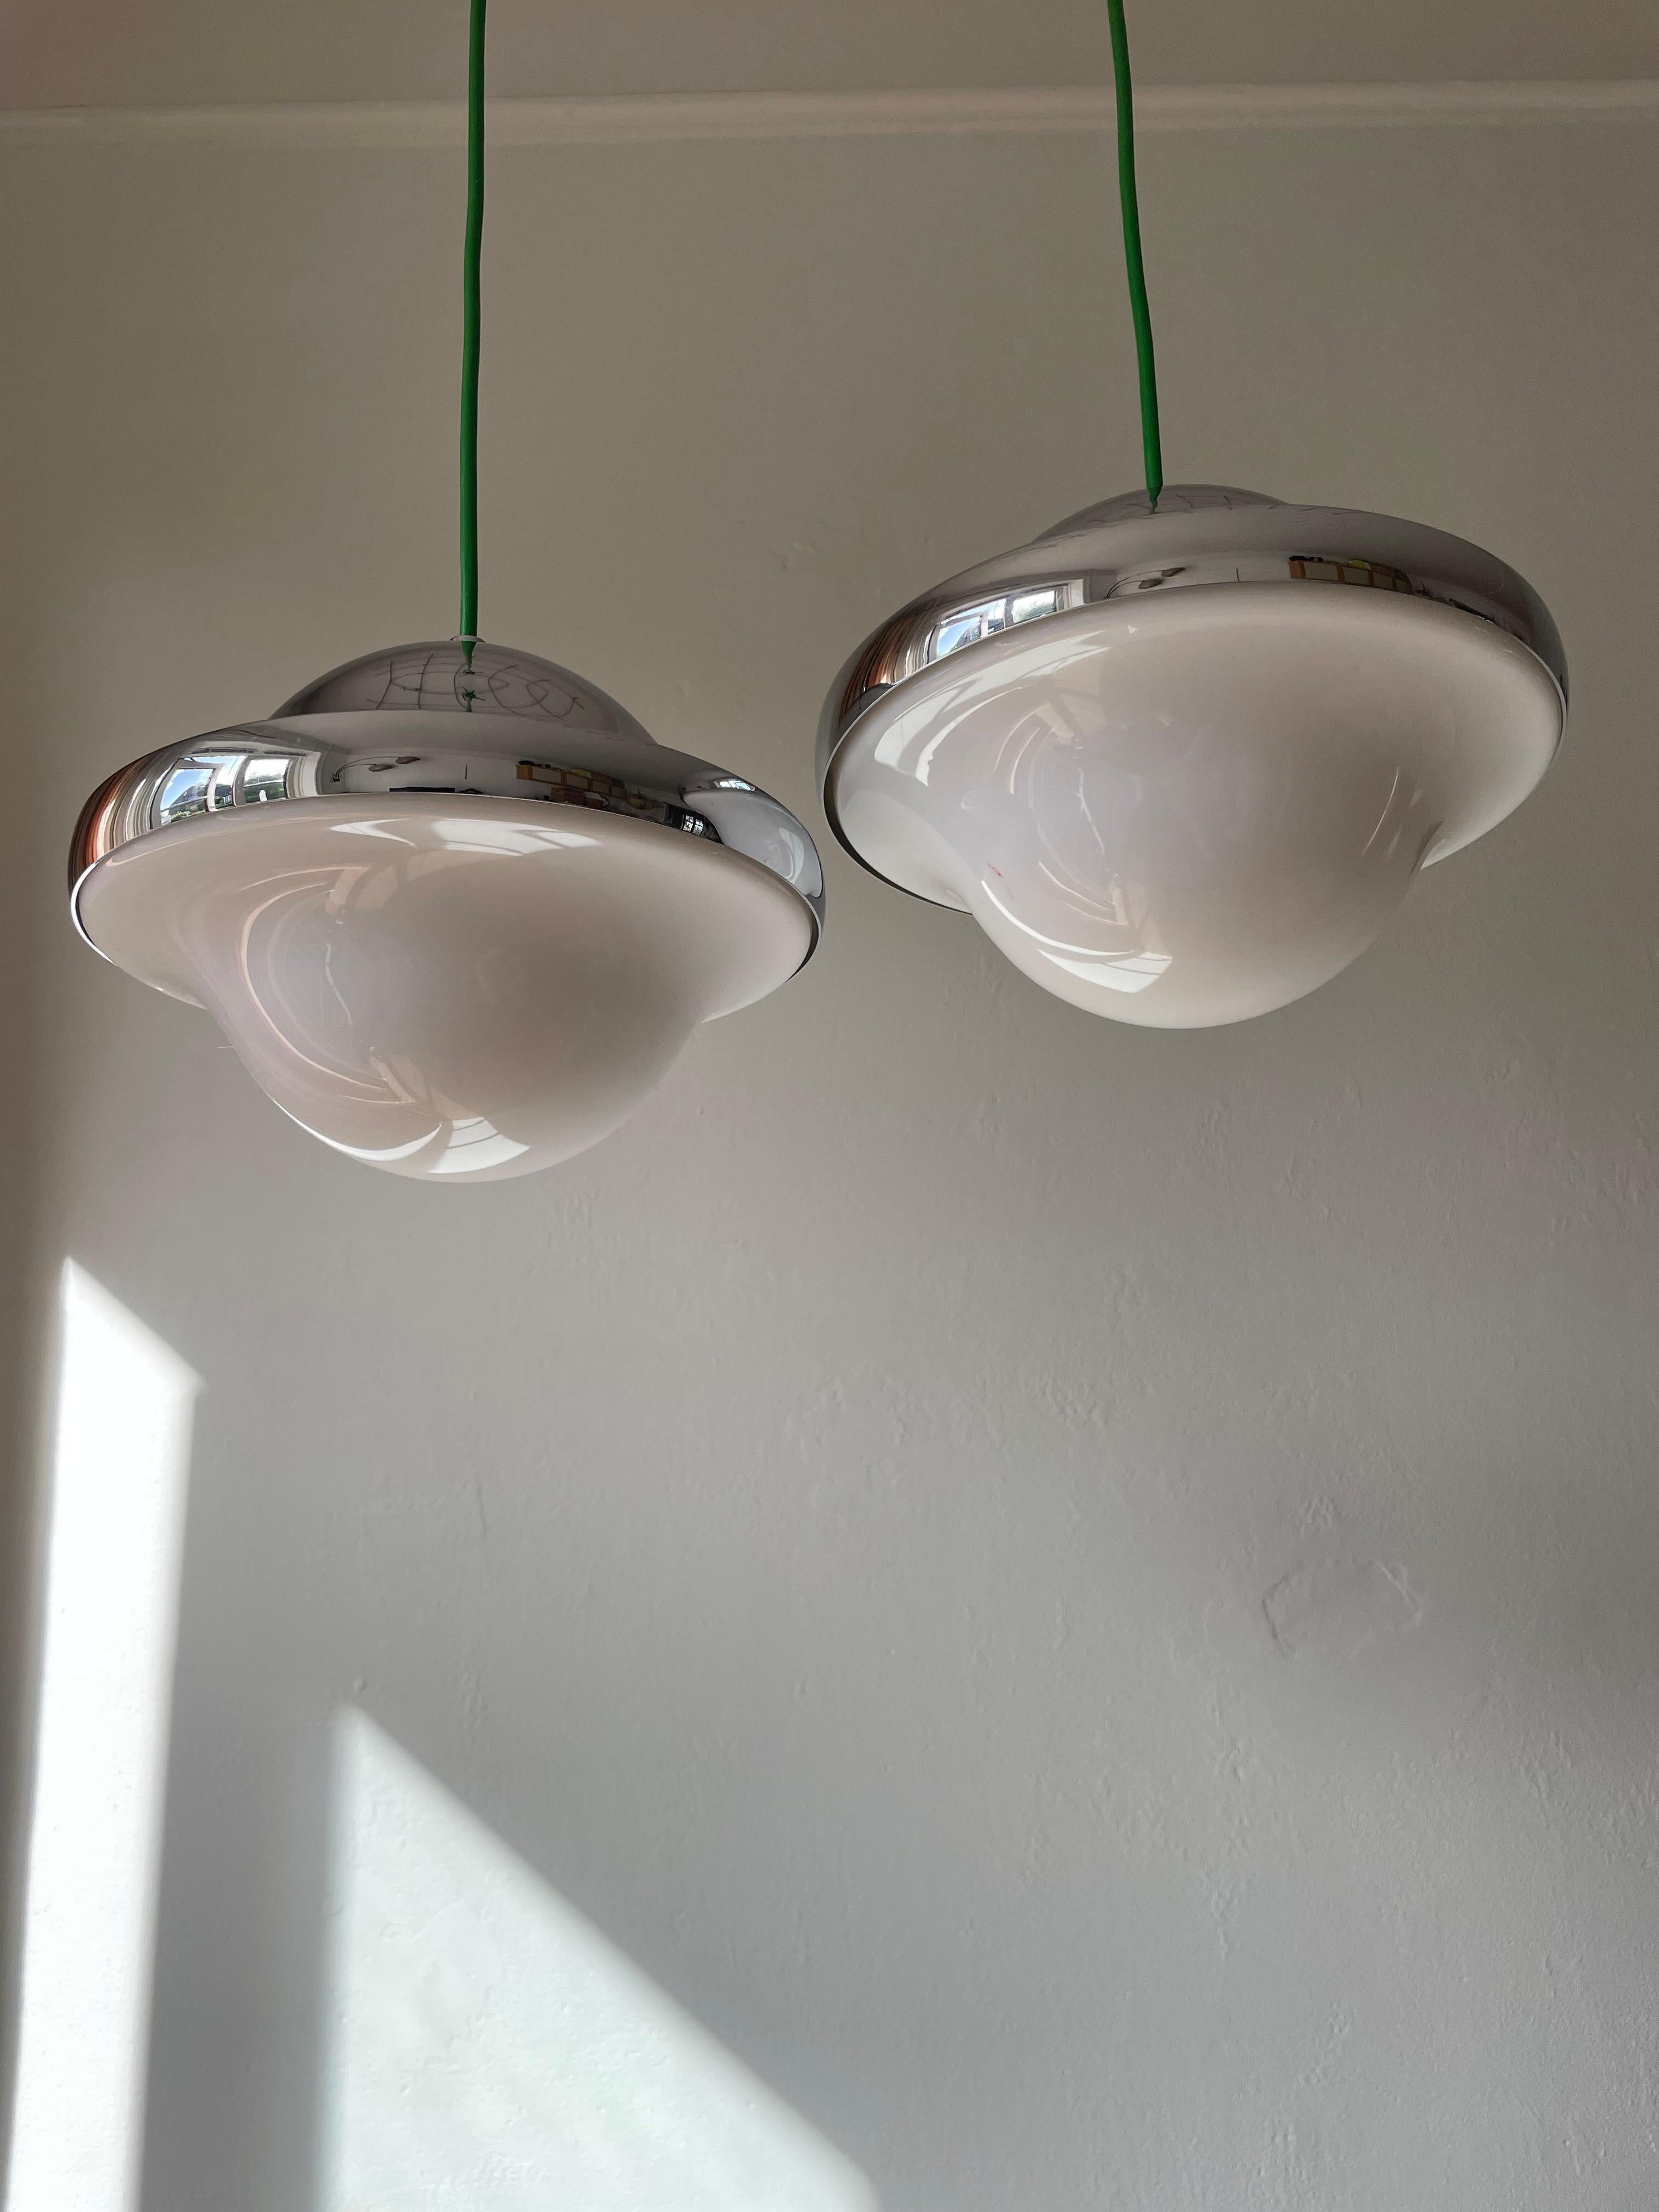 Ein Paar eines der ikonischsten Designs von Henning Koppel, die Leuchte Bubi. Zwei Bubi-Lampen aus glänzendem Chrom und mattweißem Acryl mit markanter grüner Kordel, 1972 von Henning Koppel (1918-1981) entworfen. Die schlanke, runde, organische und